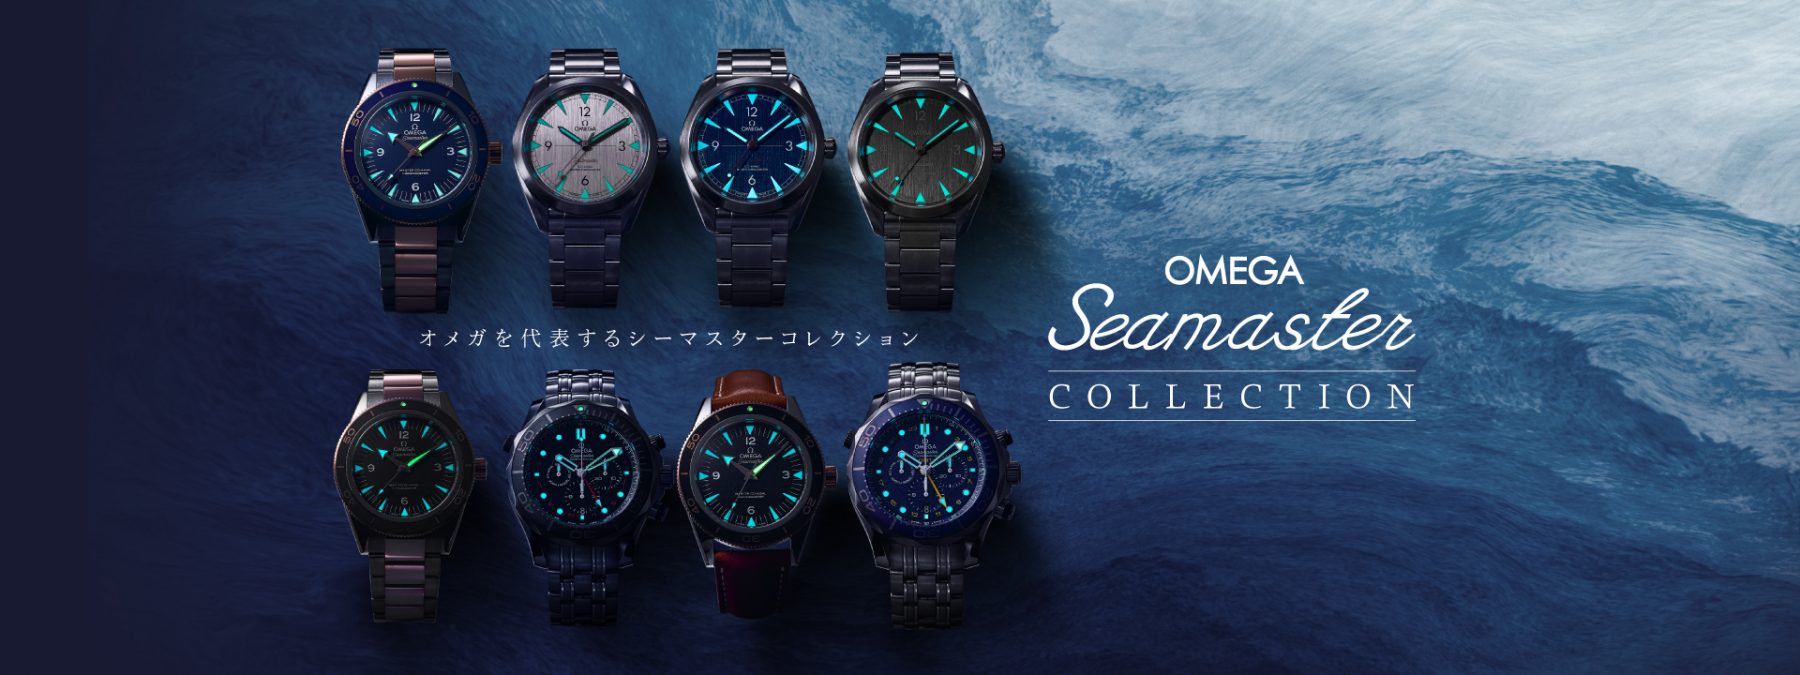 お得送料無料OMEGA SEAMASTER Ωmatic オメガ腕時計 T25 その他